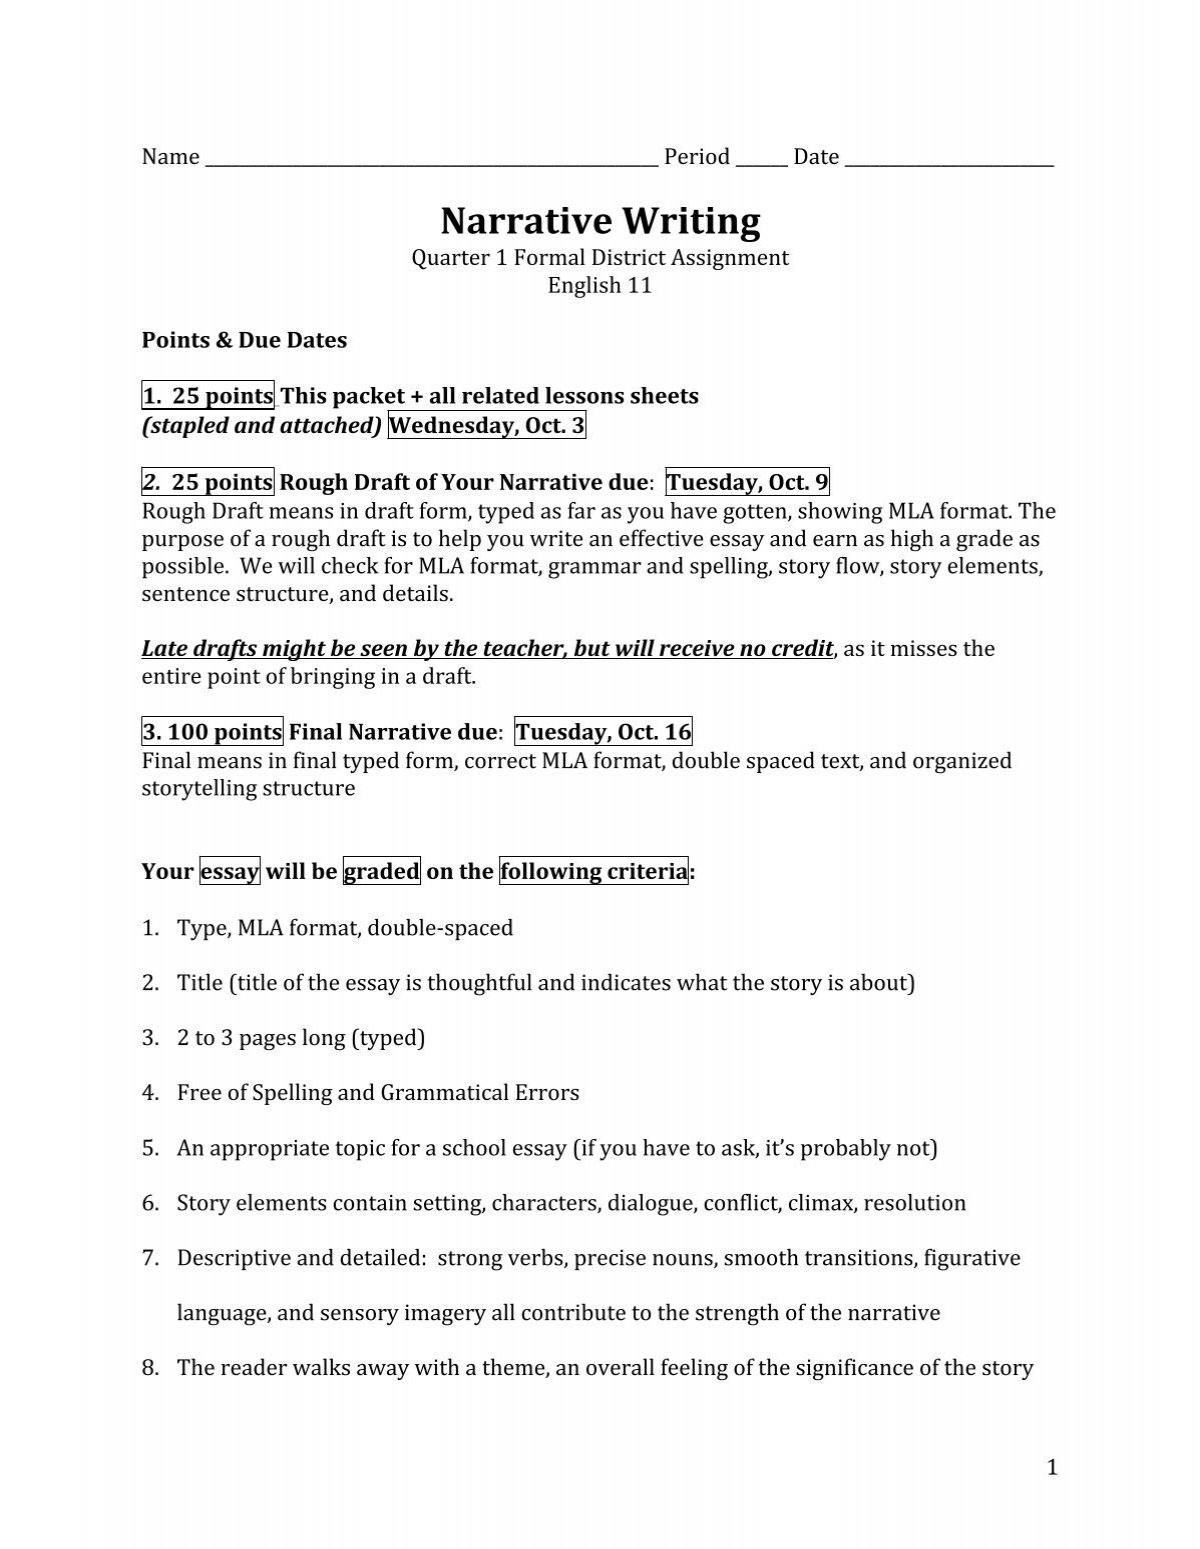 mla format for a narrative essay